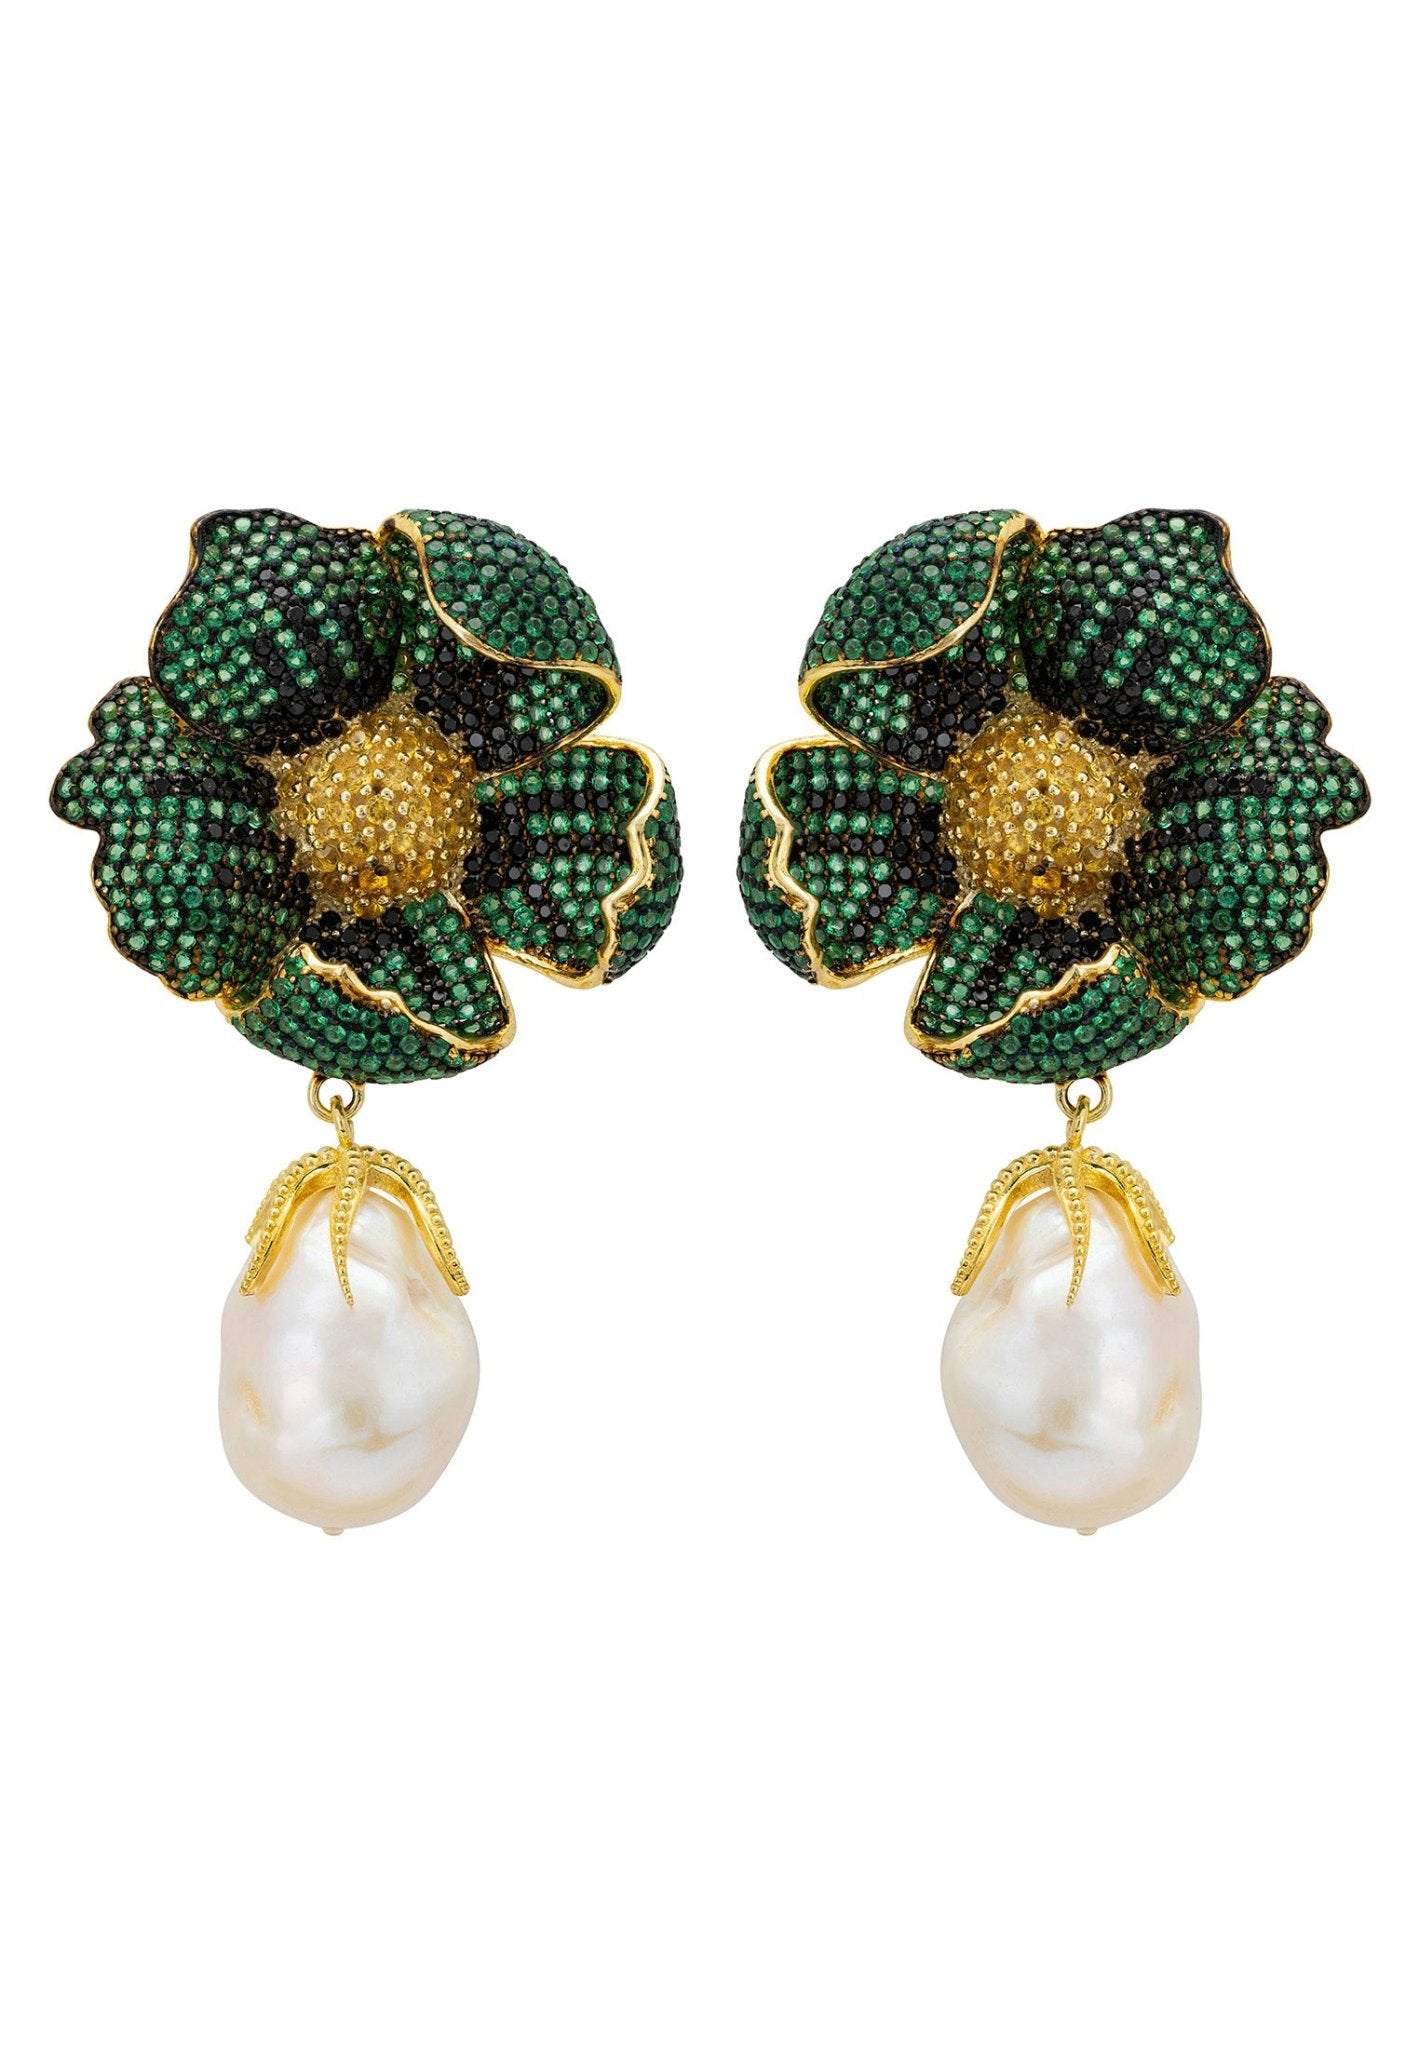 Poppy Flower Baroque Pearl Earrings Emerald Green Gold - LATELITA Earrings